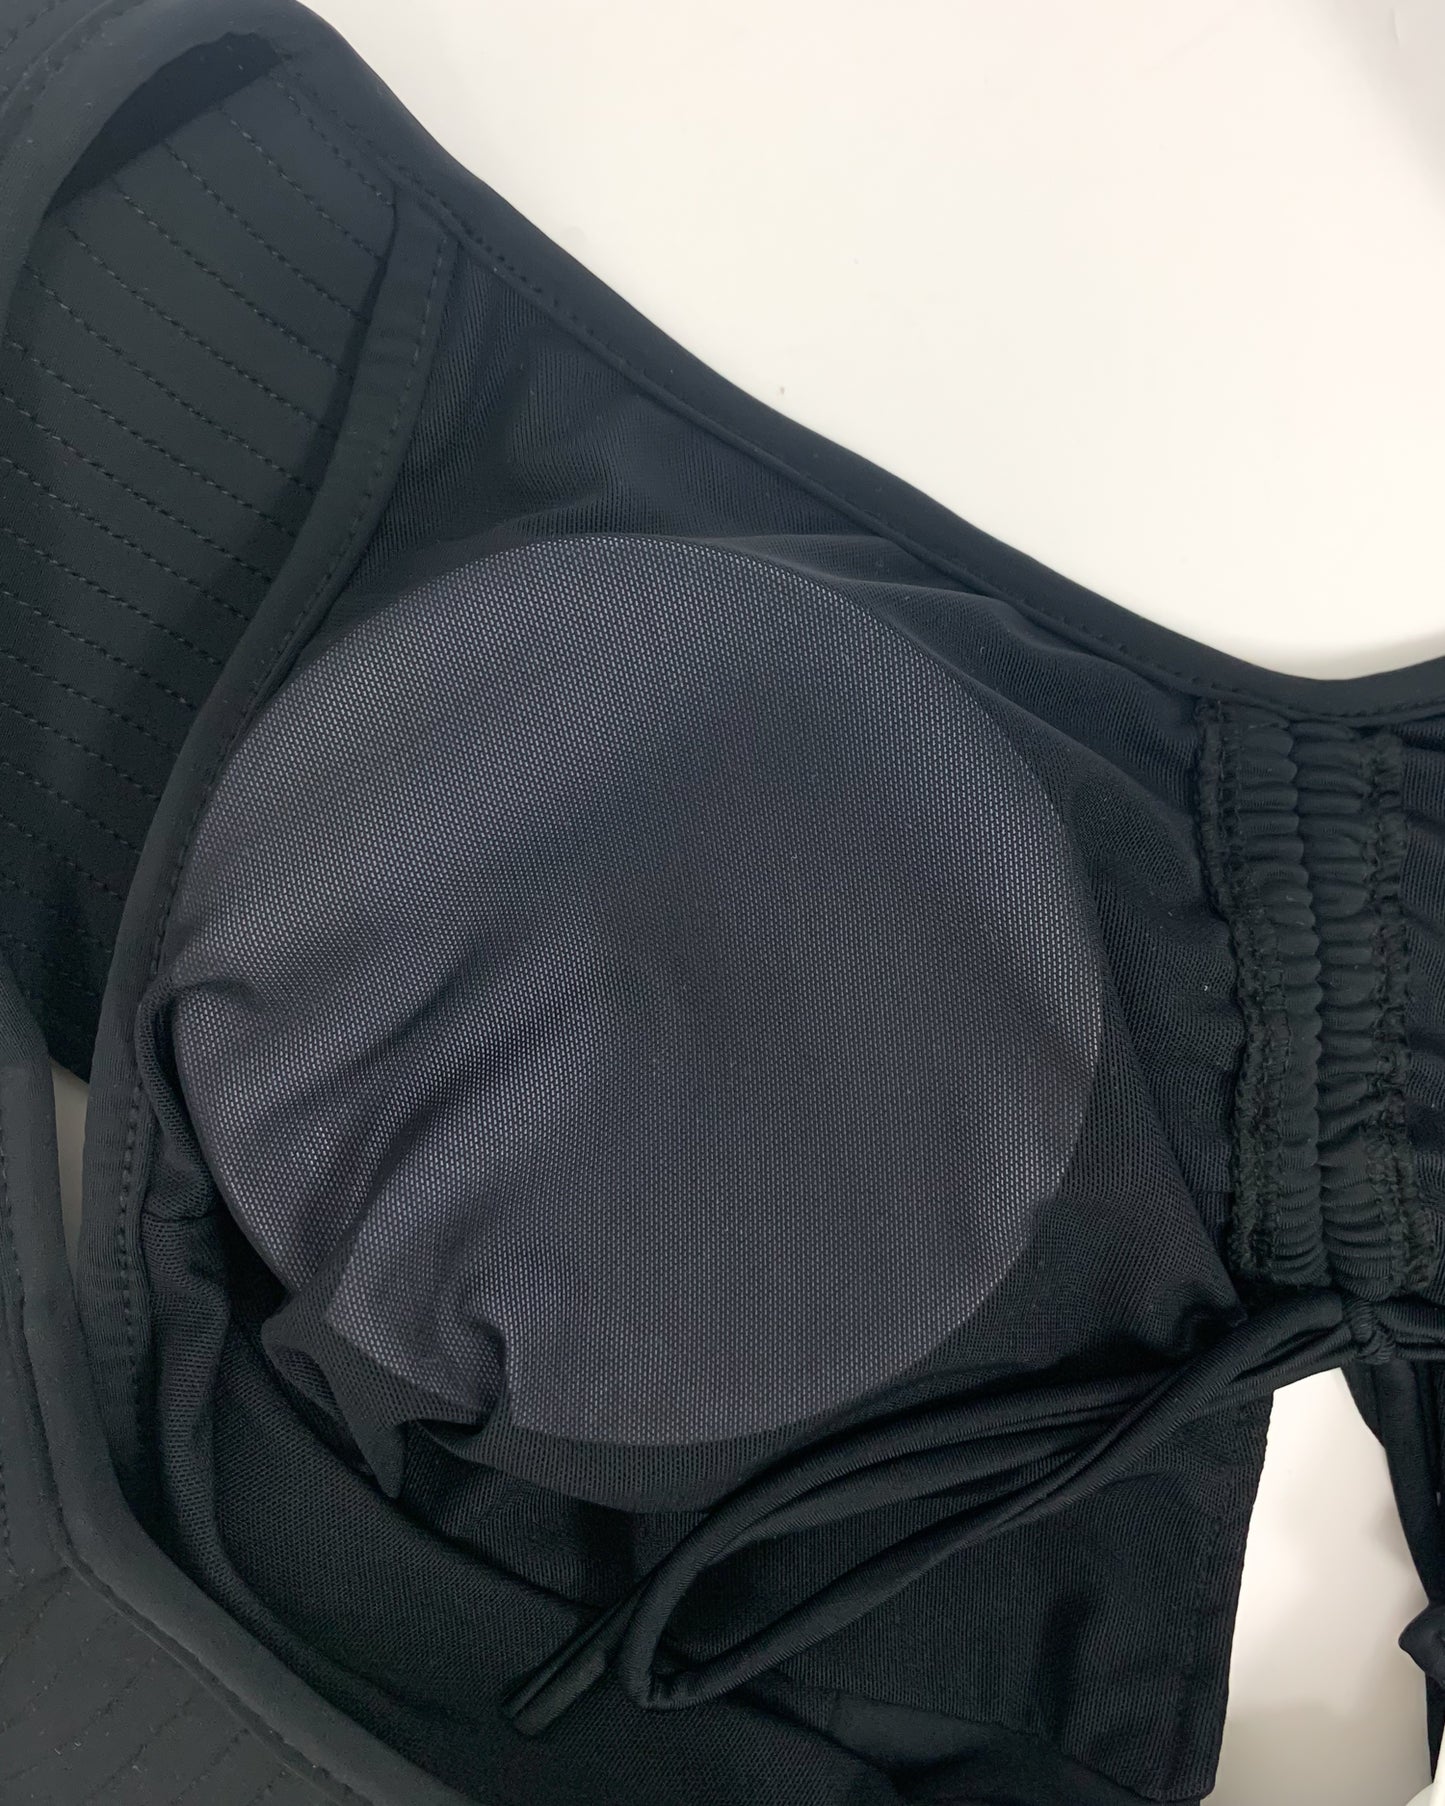 black bold ruffles cutout front one piece swimwear - M